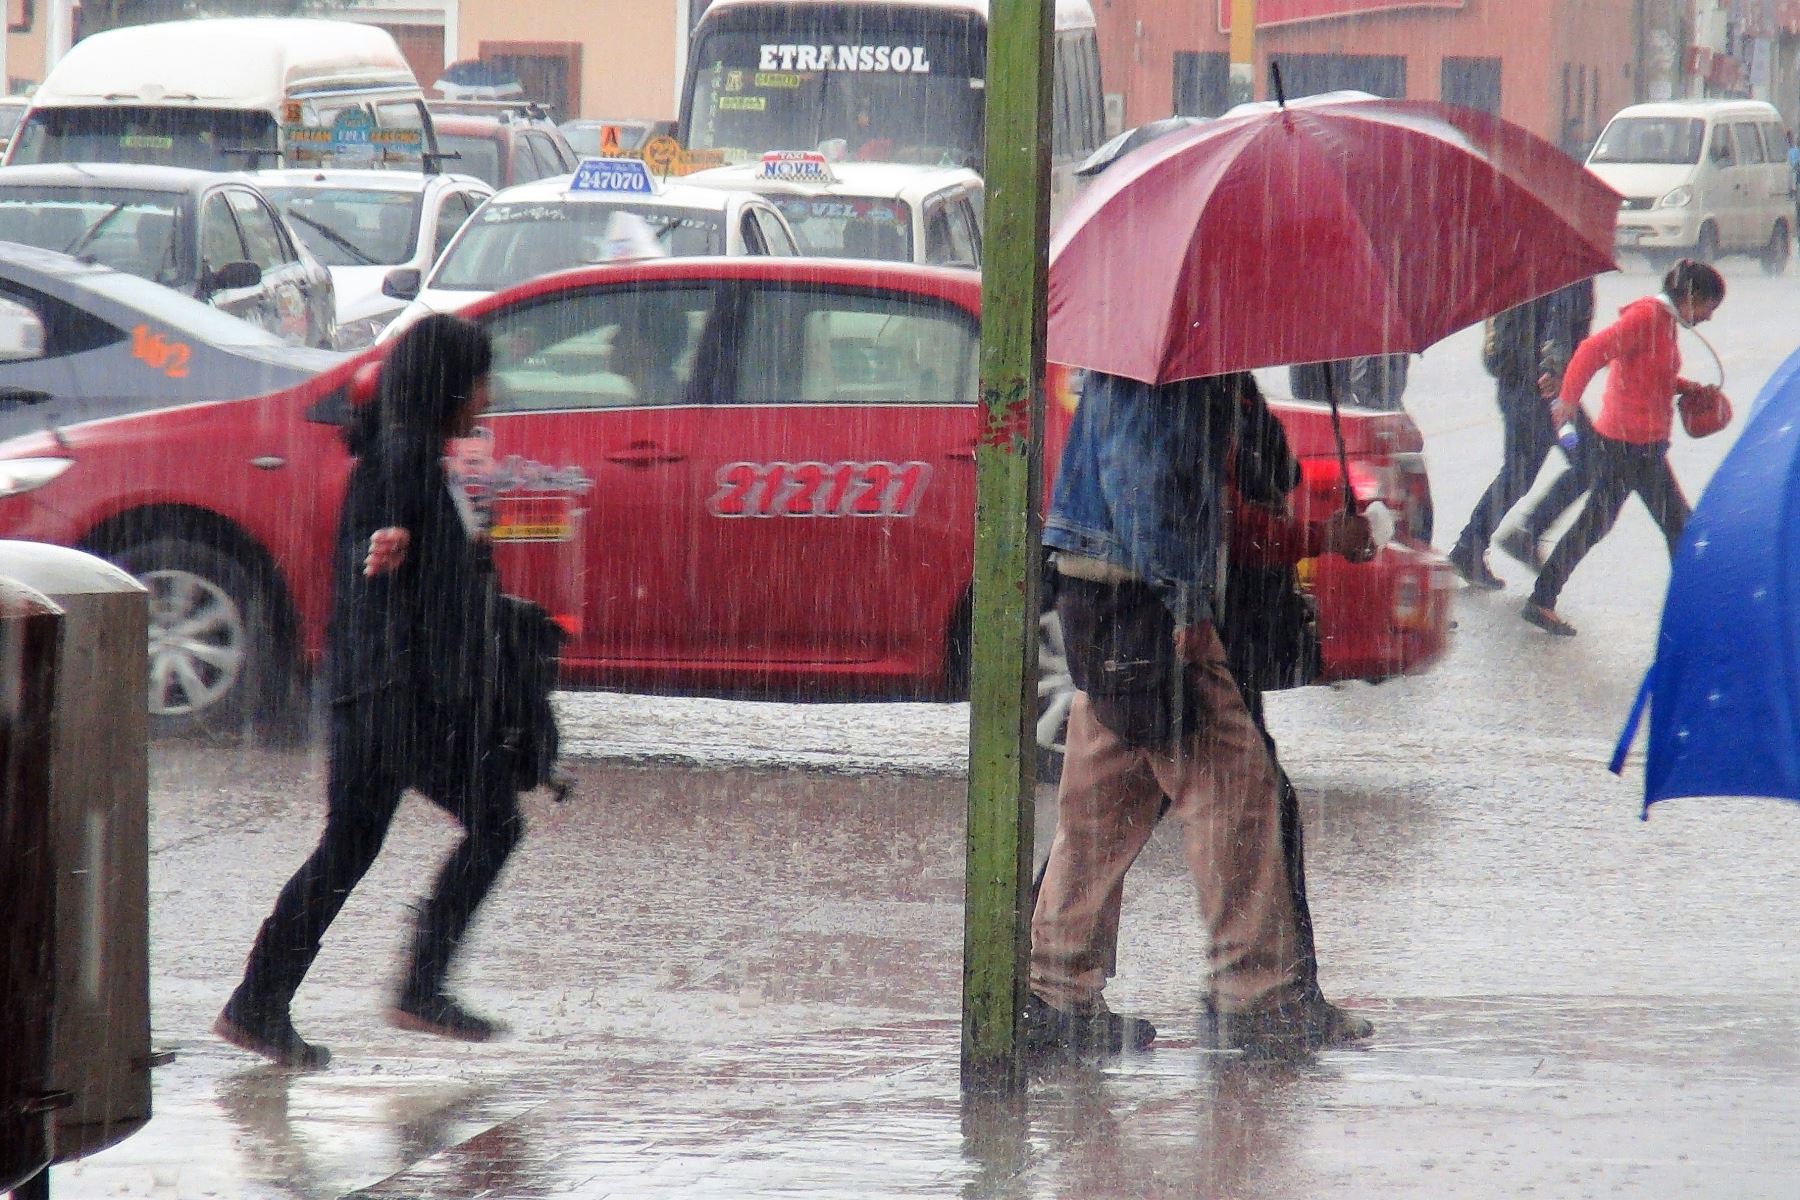 Una torrencial lluvia provocó el colapso de alcantarillas pluviales en el centro de la ciudad de Huancayo, así como la inundación y desplome de paredes de algunas viviendas precarias en la zona periférica. ANDINA/Pedro Tinoco